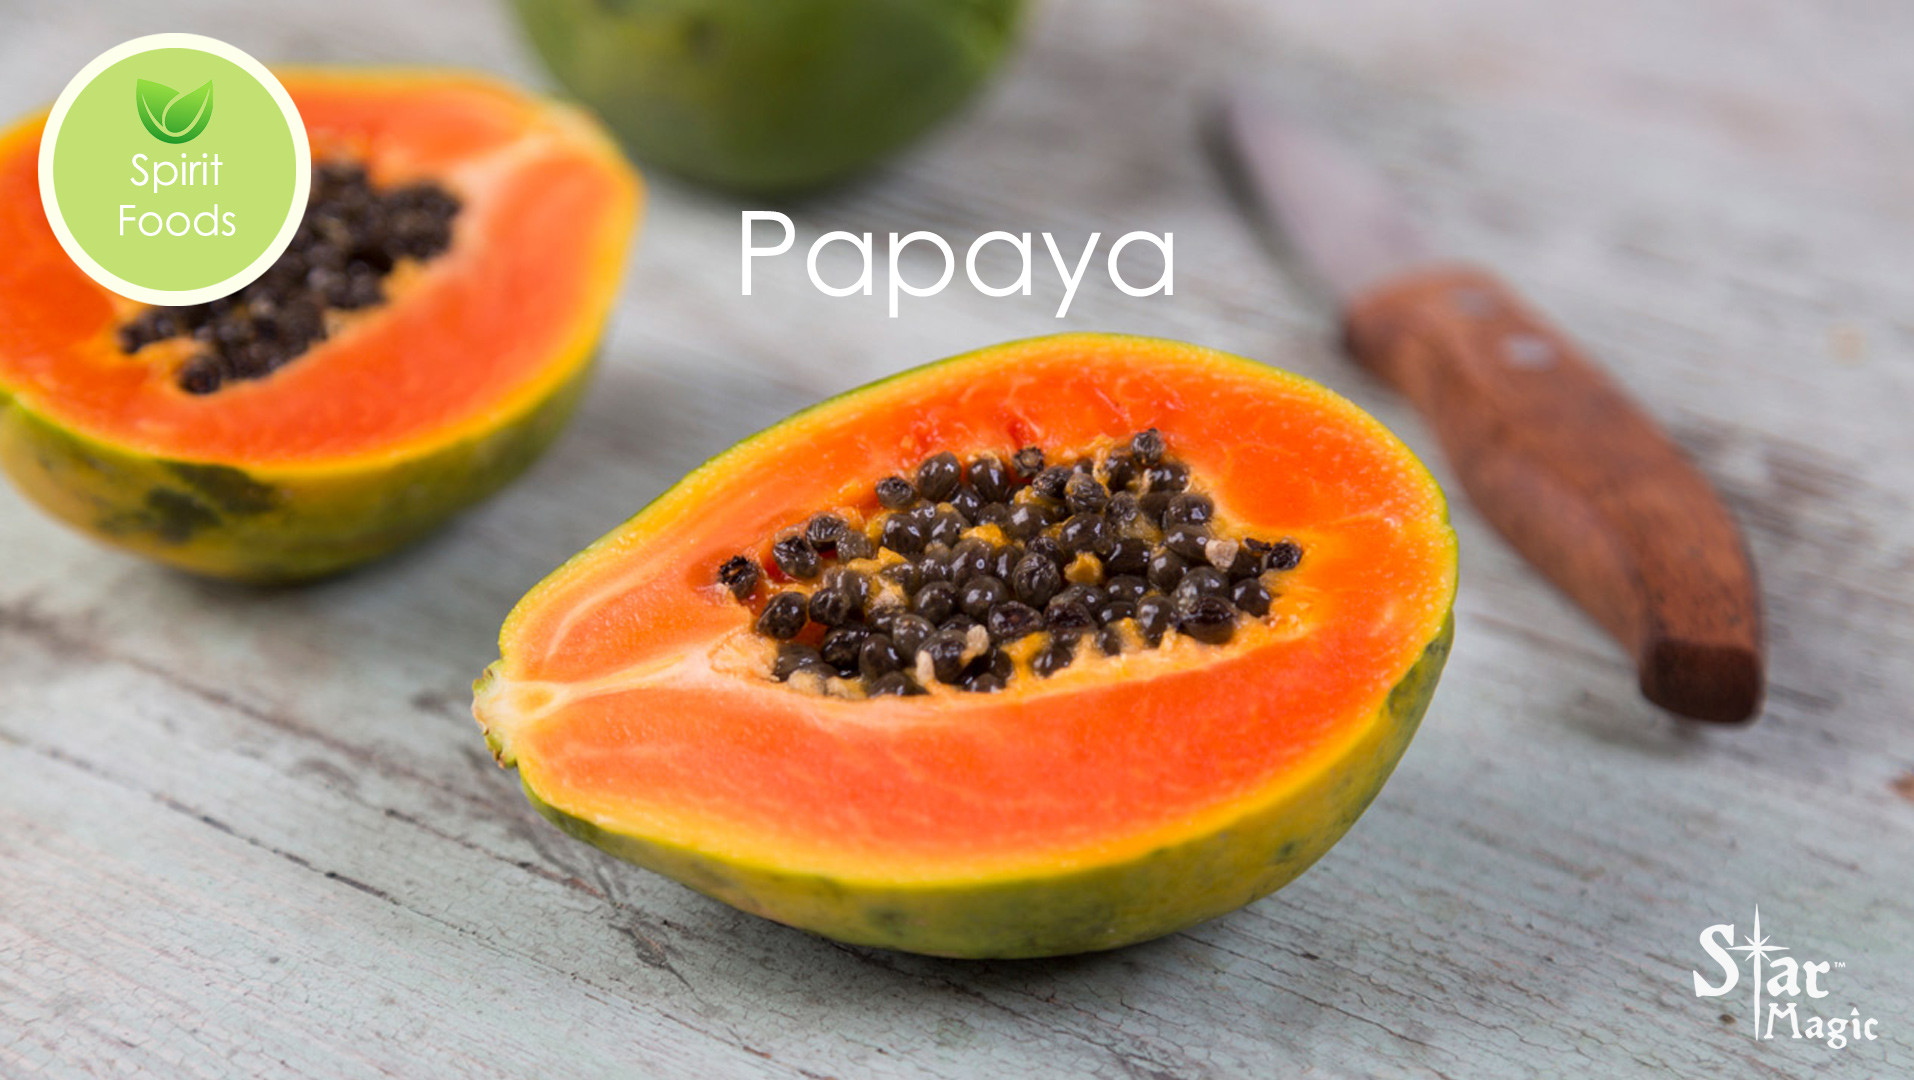 Spirit Food – Papaya